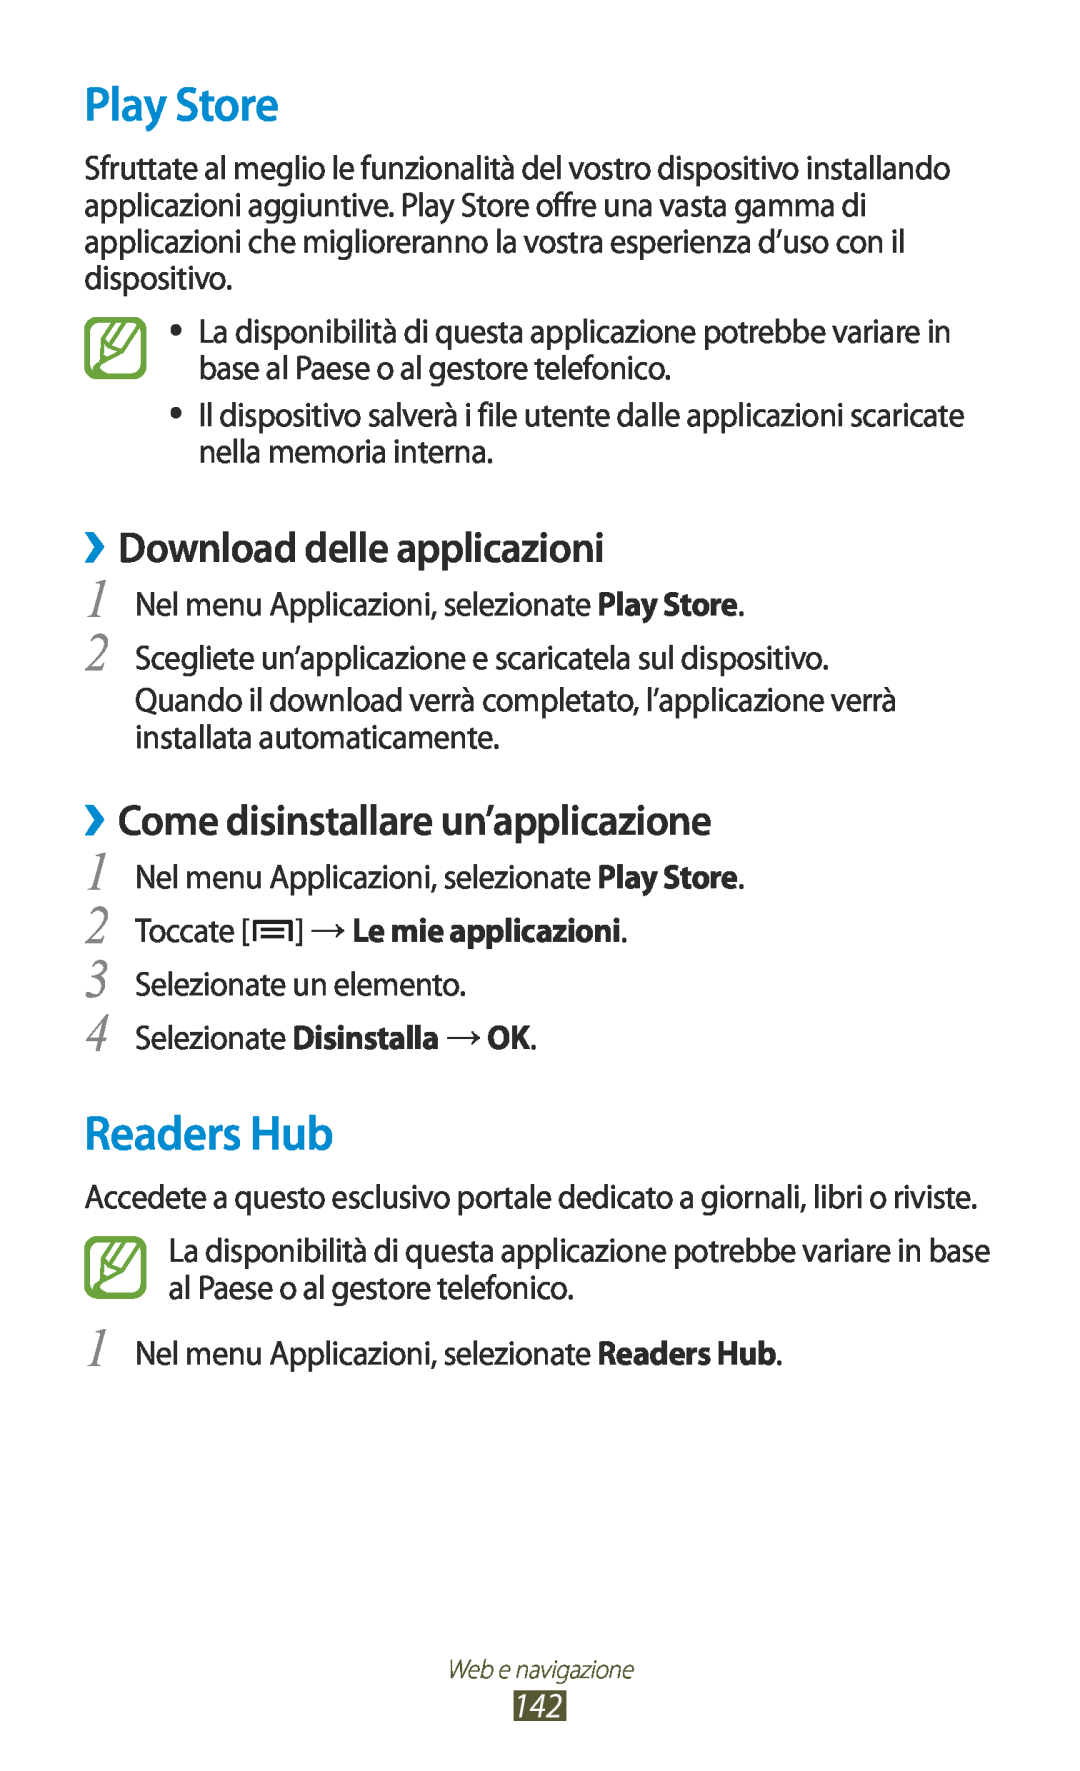 Samsung GT-N7000RWAHUI manual Play Store, Readers Hub, ››Come disinstallare un’applicazione, ››Download delle applicazioni 